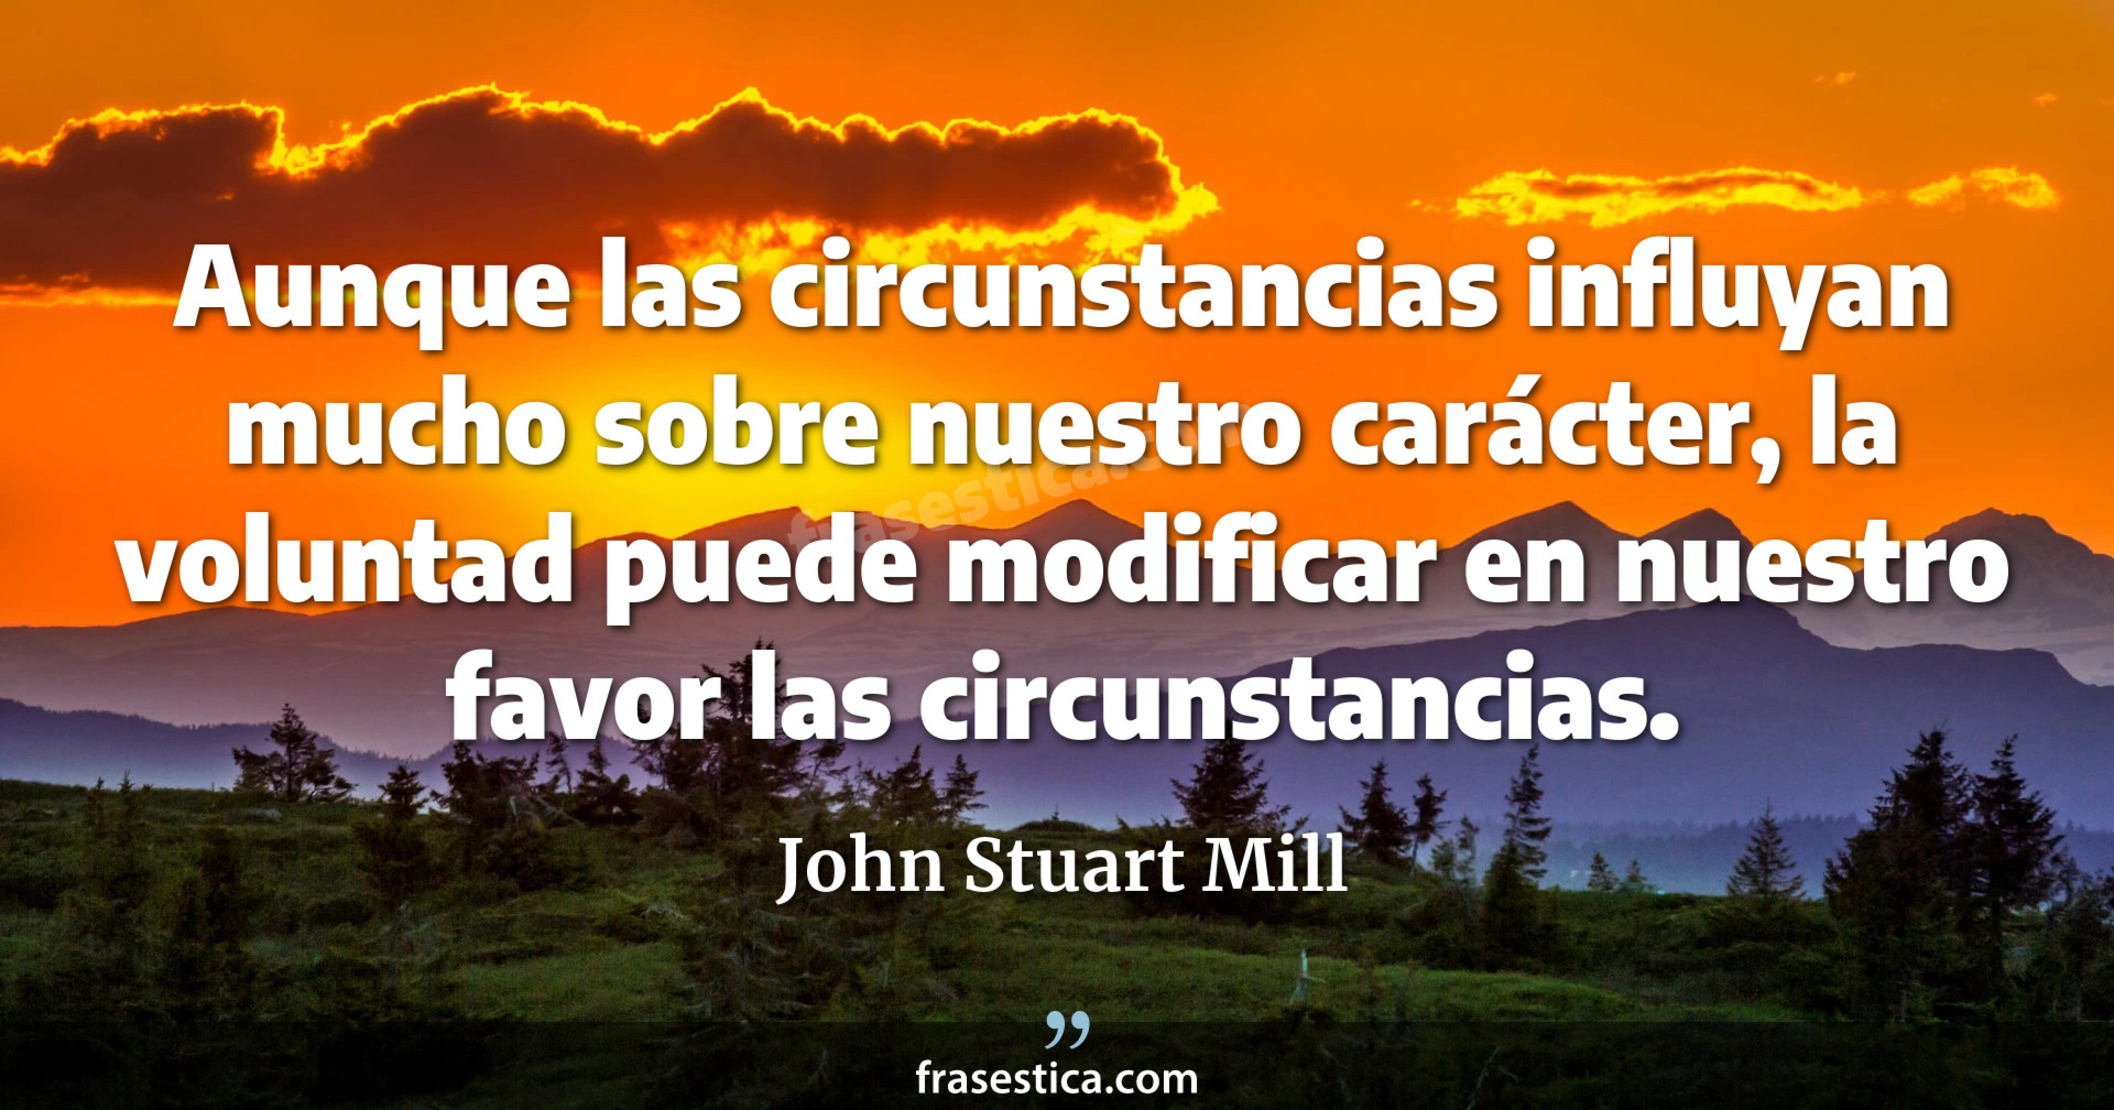 Aunque las circunstancias influyan mucho sobre nuestro carácter, la voluntad puede modificar en nuestro favor las circunstancias. - John Stuart Mill